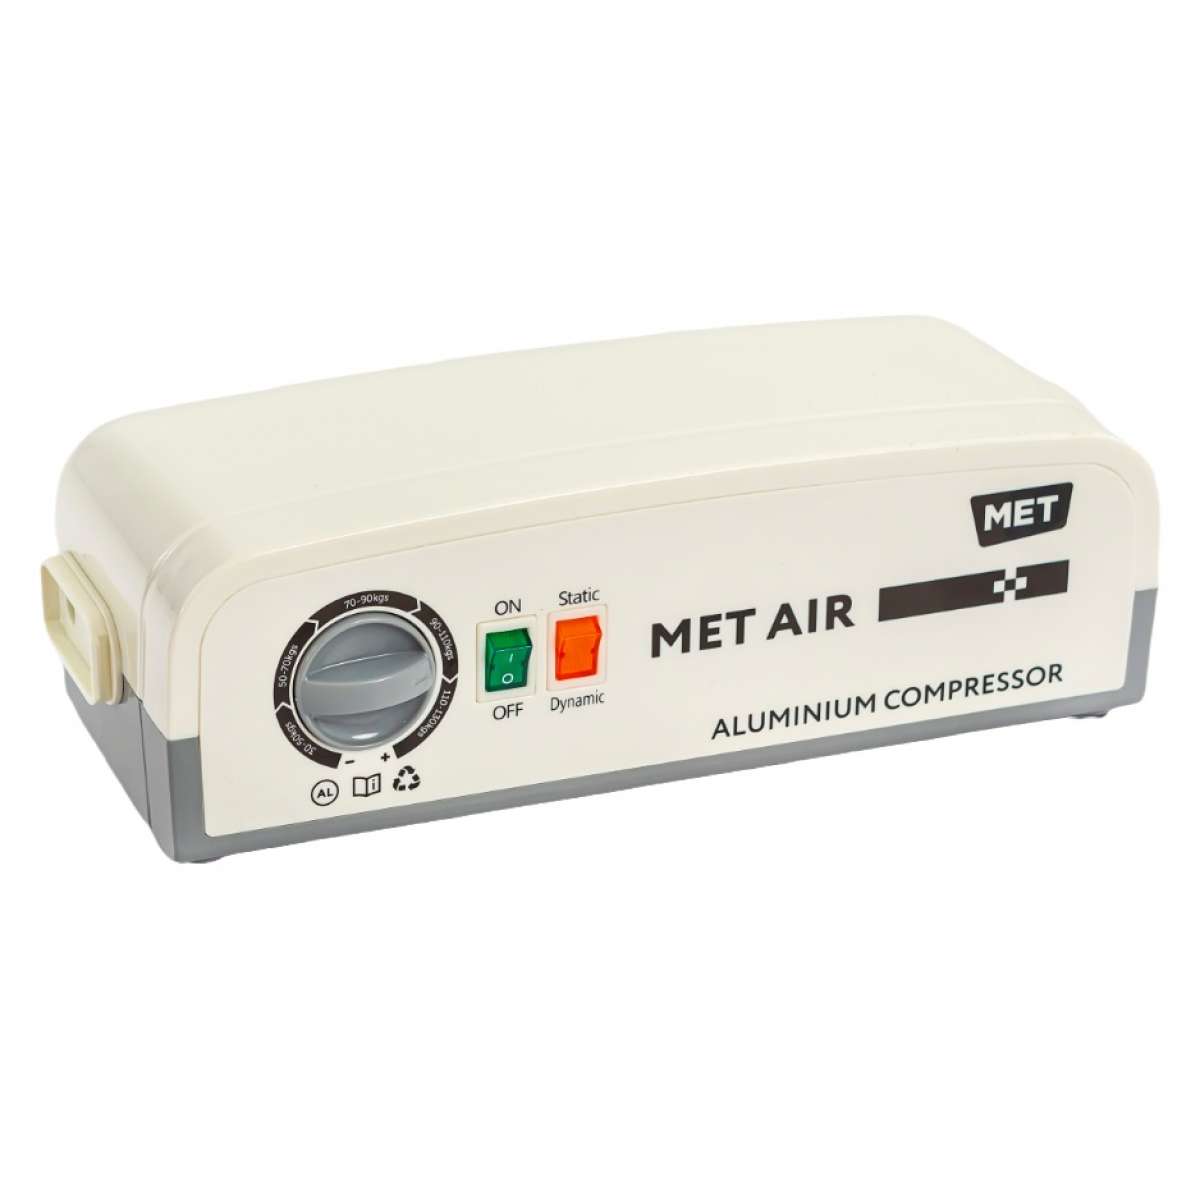 Противопролежневая система с алюминиевым компрессором, вентиляцией и функцией статик MET AIR B-400